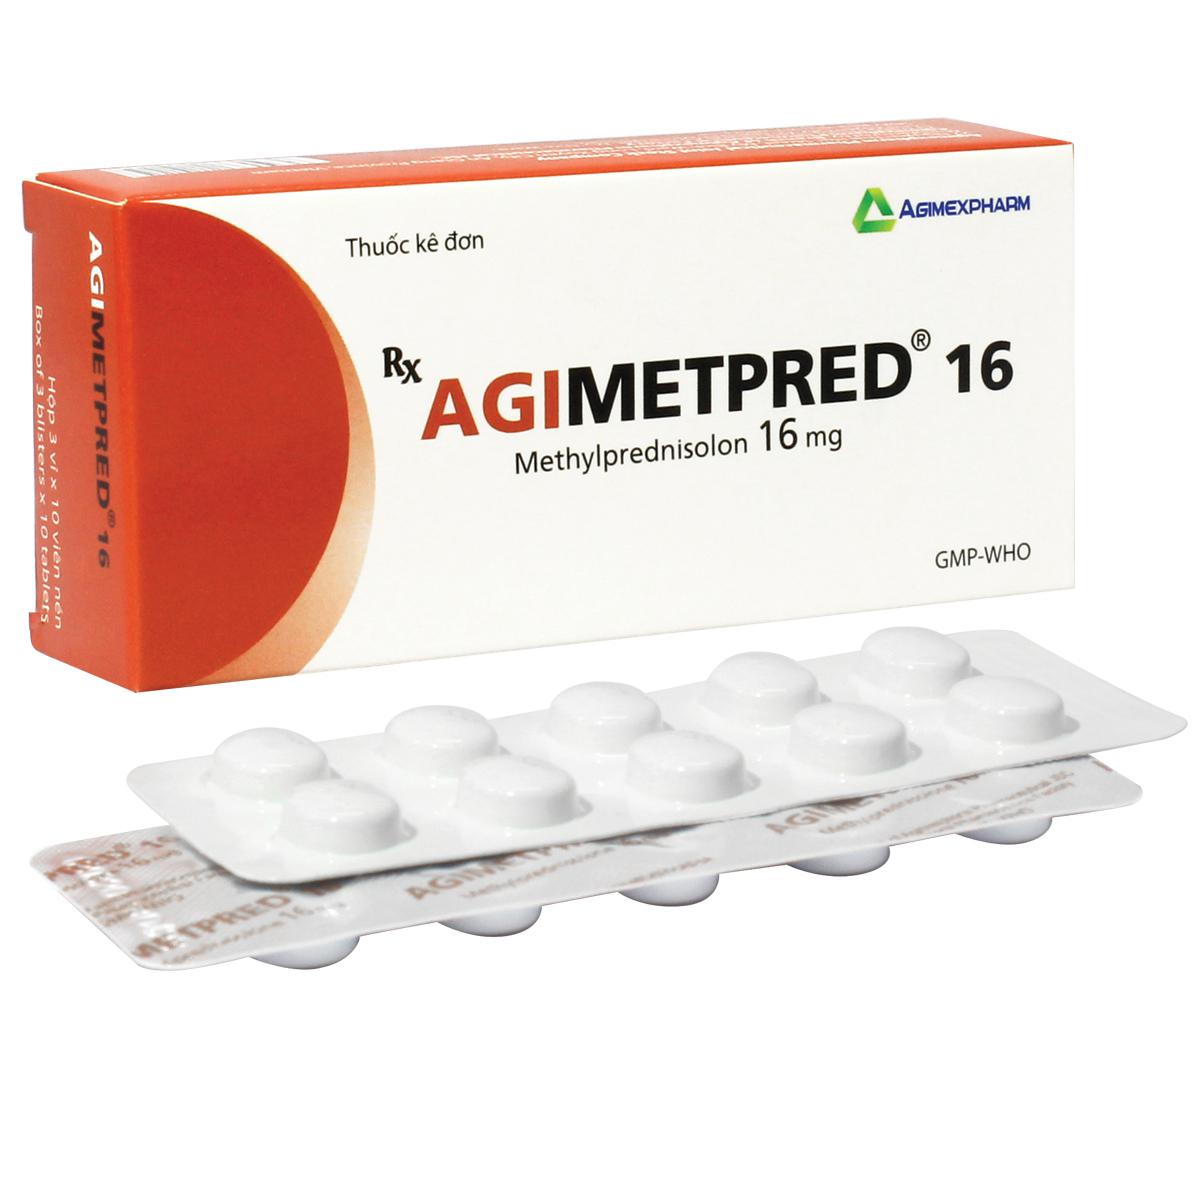 Agimetpred 16 (Methylprednisolon) Agimexpharm (H/60v)